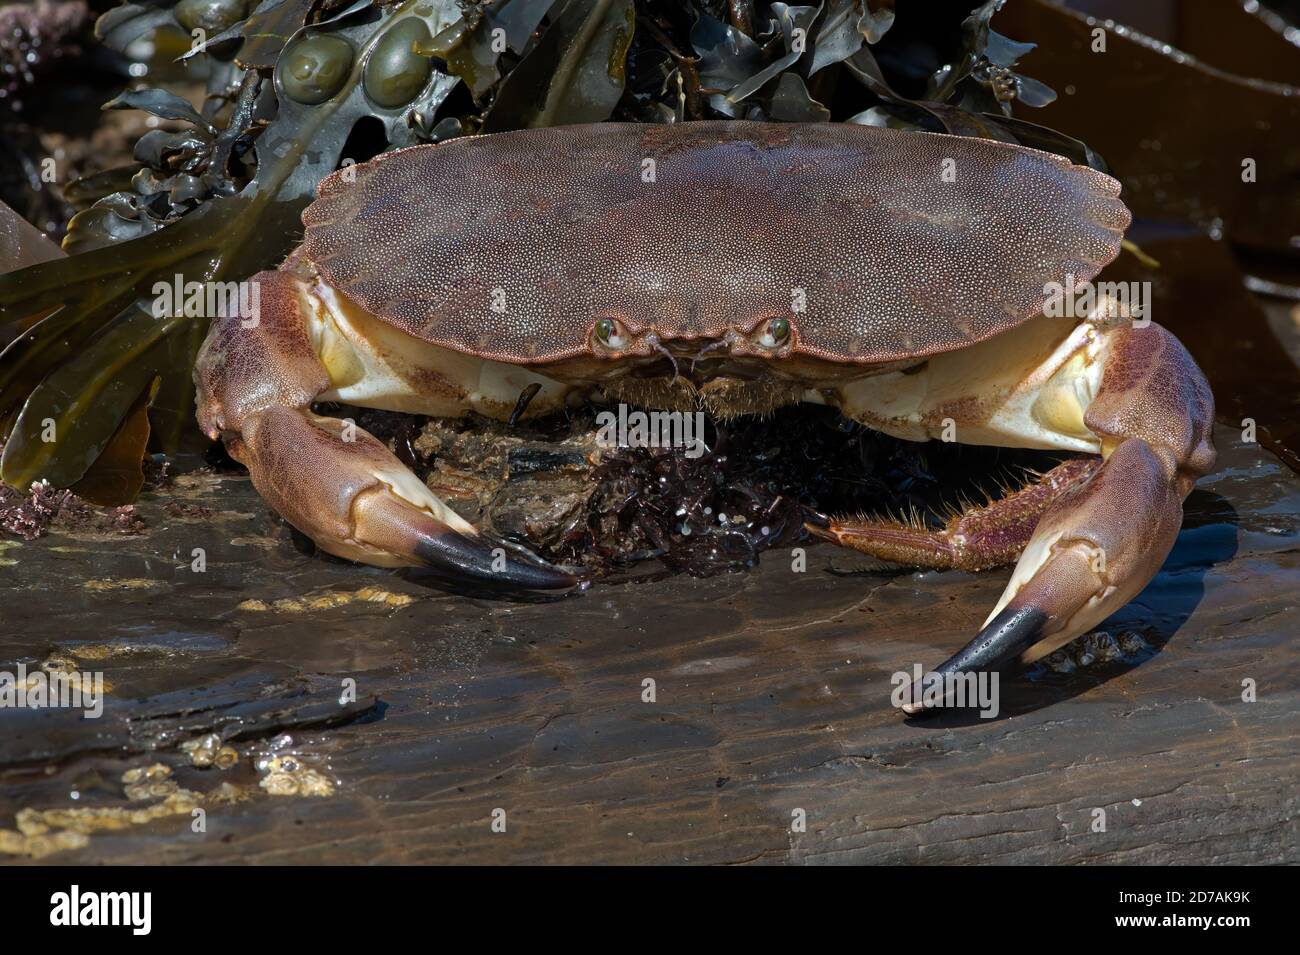 Brown Crab (Cancer pagurus), 54 imágenes individuales de relación de aumento 1:1 apiladas para proporcionar un inmenso detalle y profundidad de campo a lo largo de la toma Foto de stock